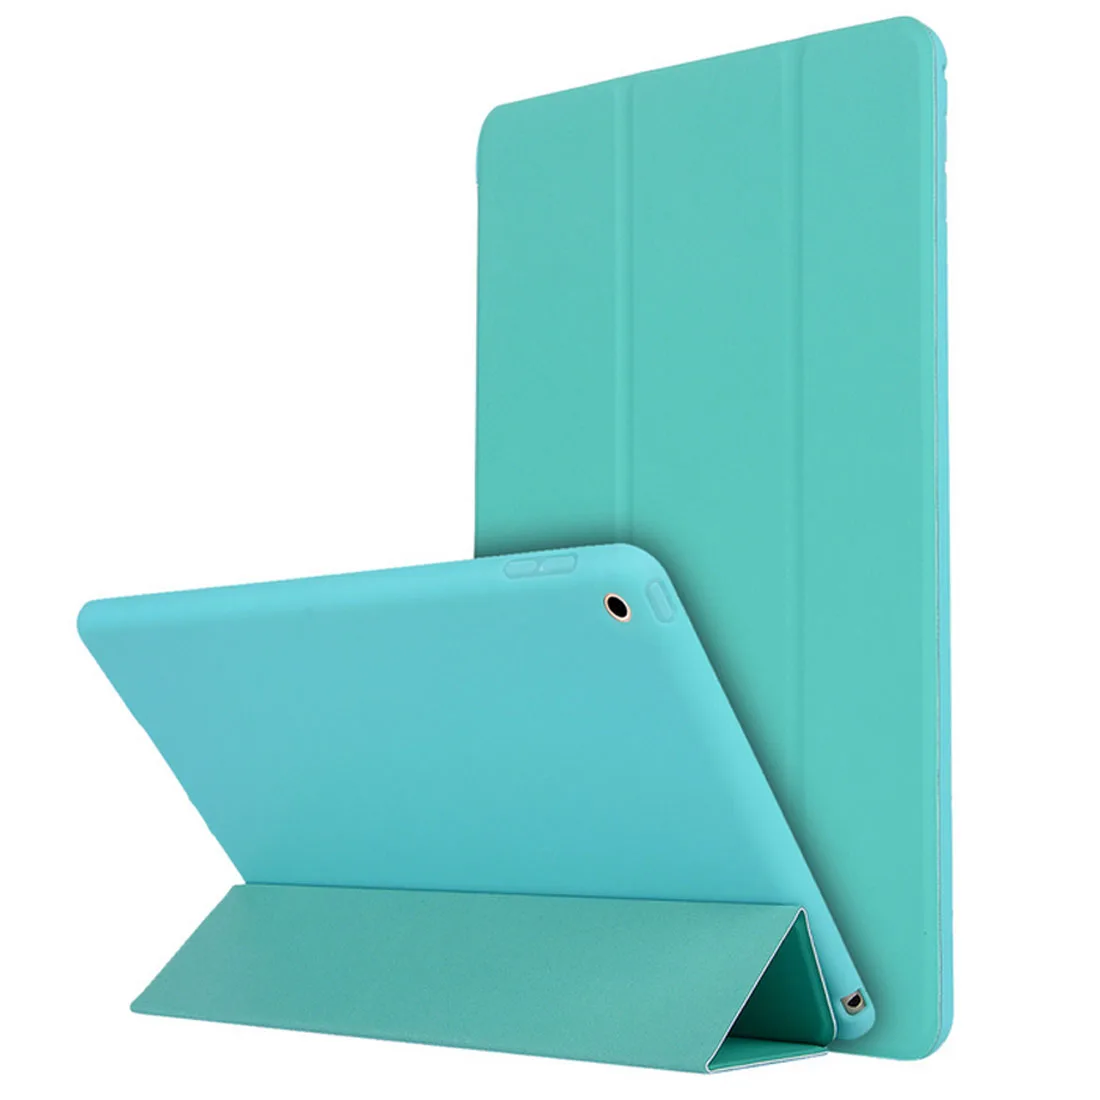 Мягкий ультра тонкий многофункциональный смарт-флип-Стенд PU кожаный чехол для Apple iPad Mini 2 3 4 retina интеллектуальная dormancy - Цвет: Mint blue green